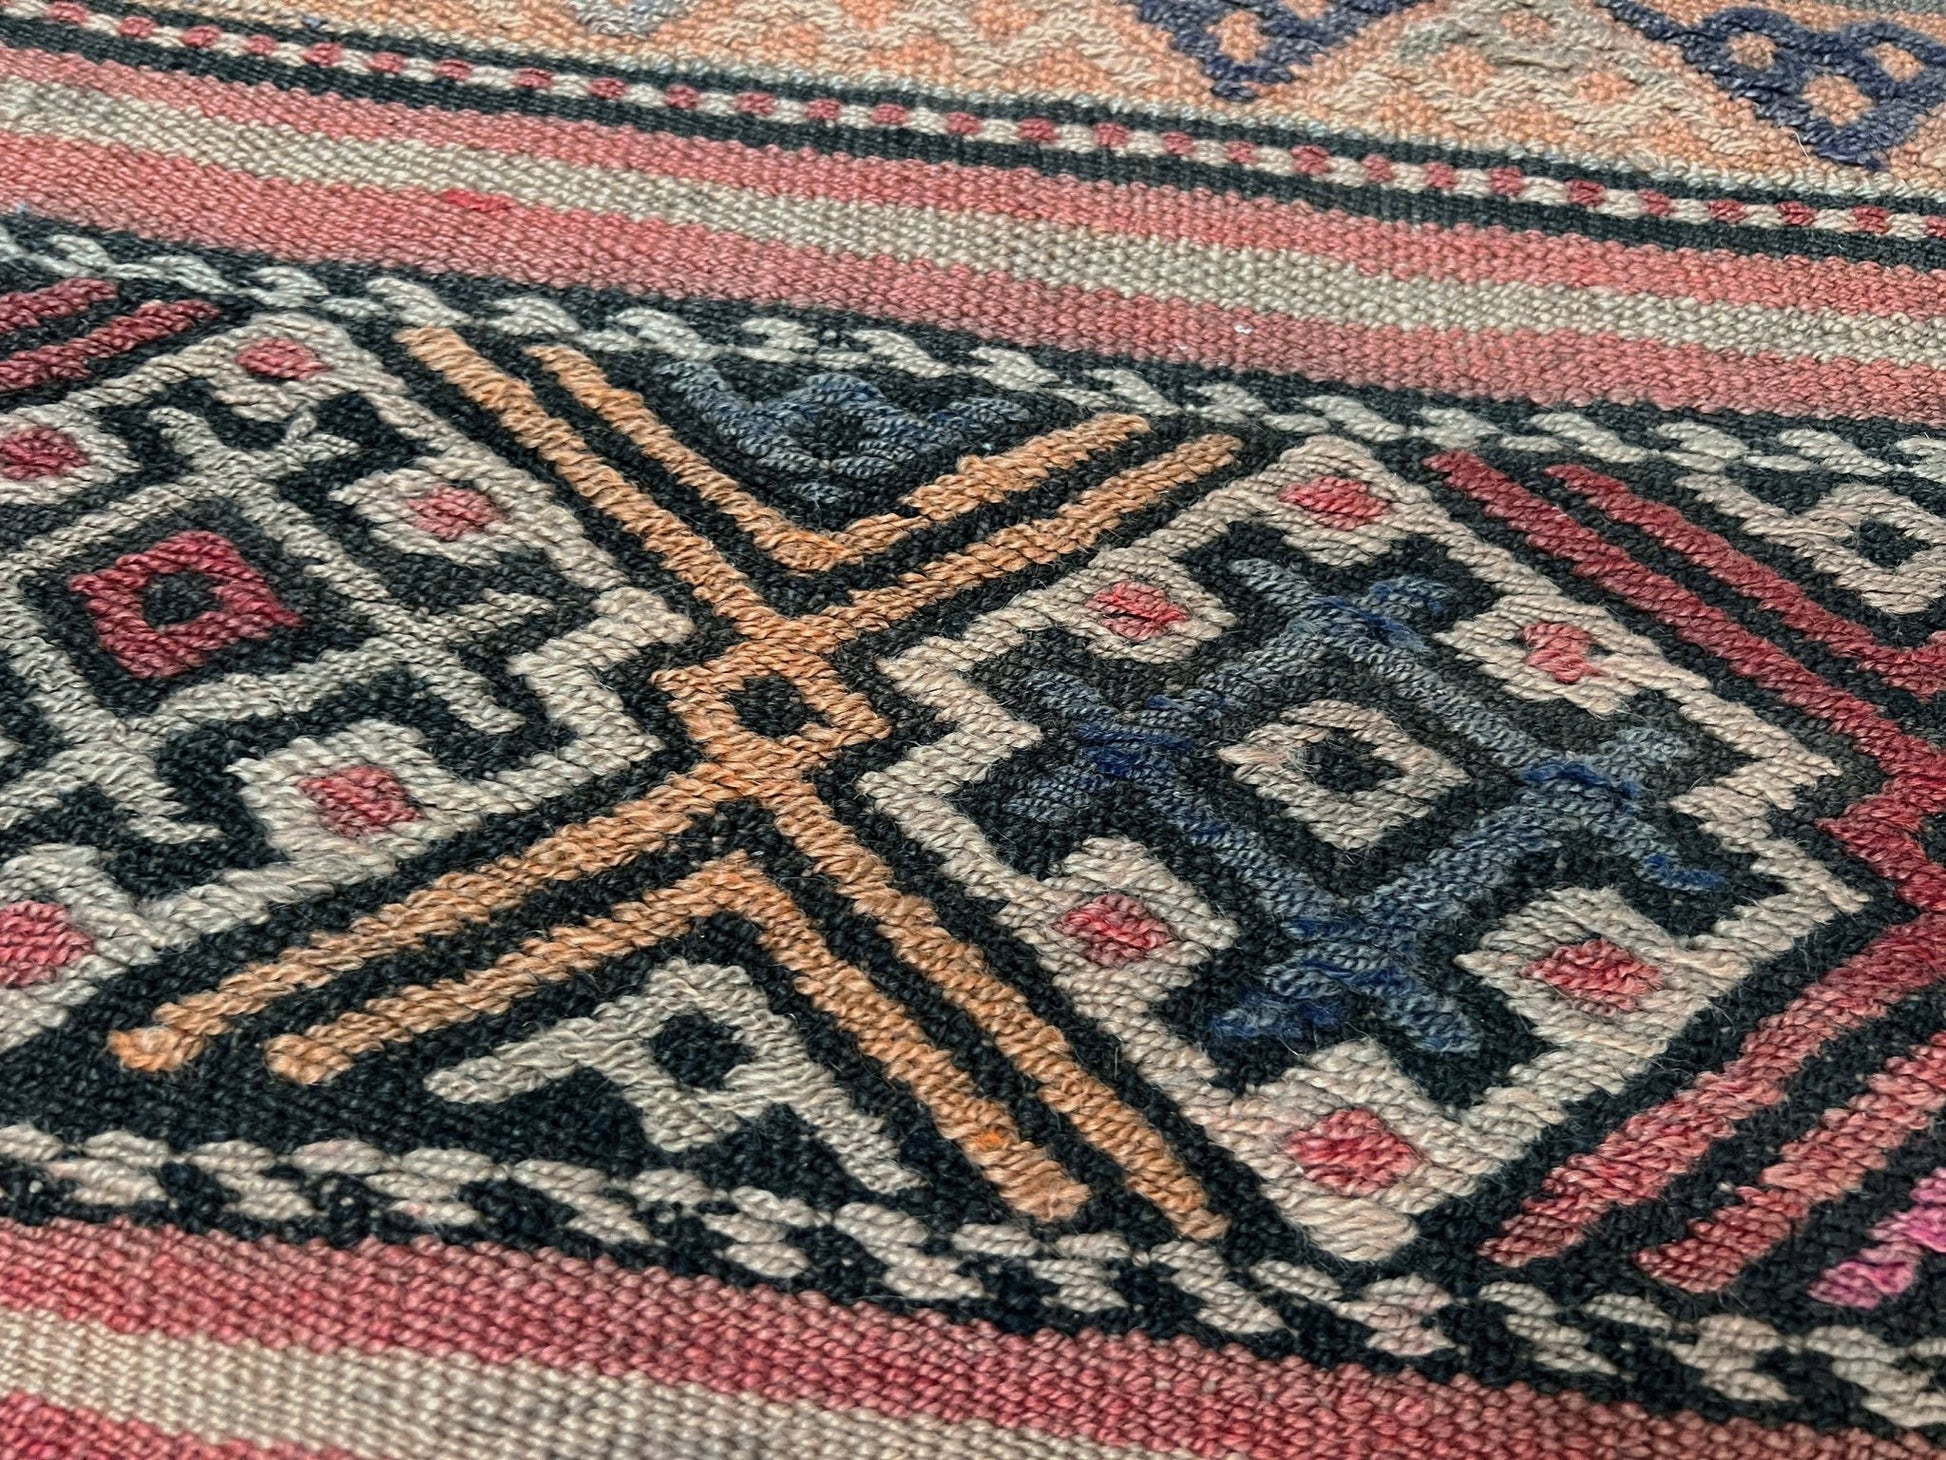 Handmade Turkish Kilim rug shop. Wool 6x8 rug for living room bedroom nursery kitchen dining. Turkish rug shop san francisco bay area